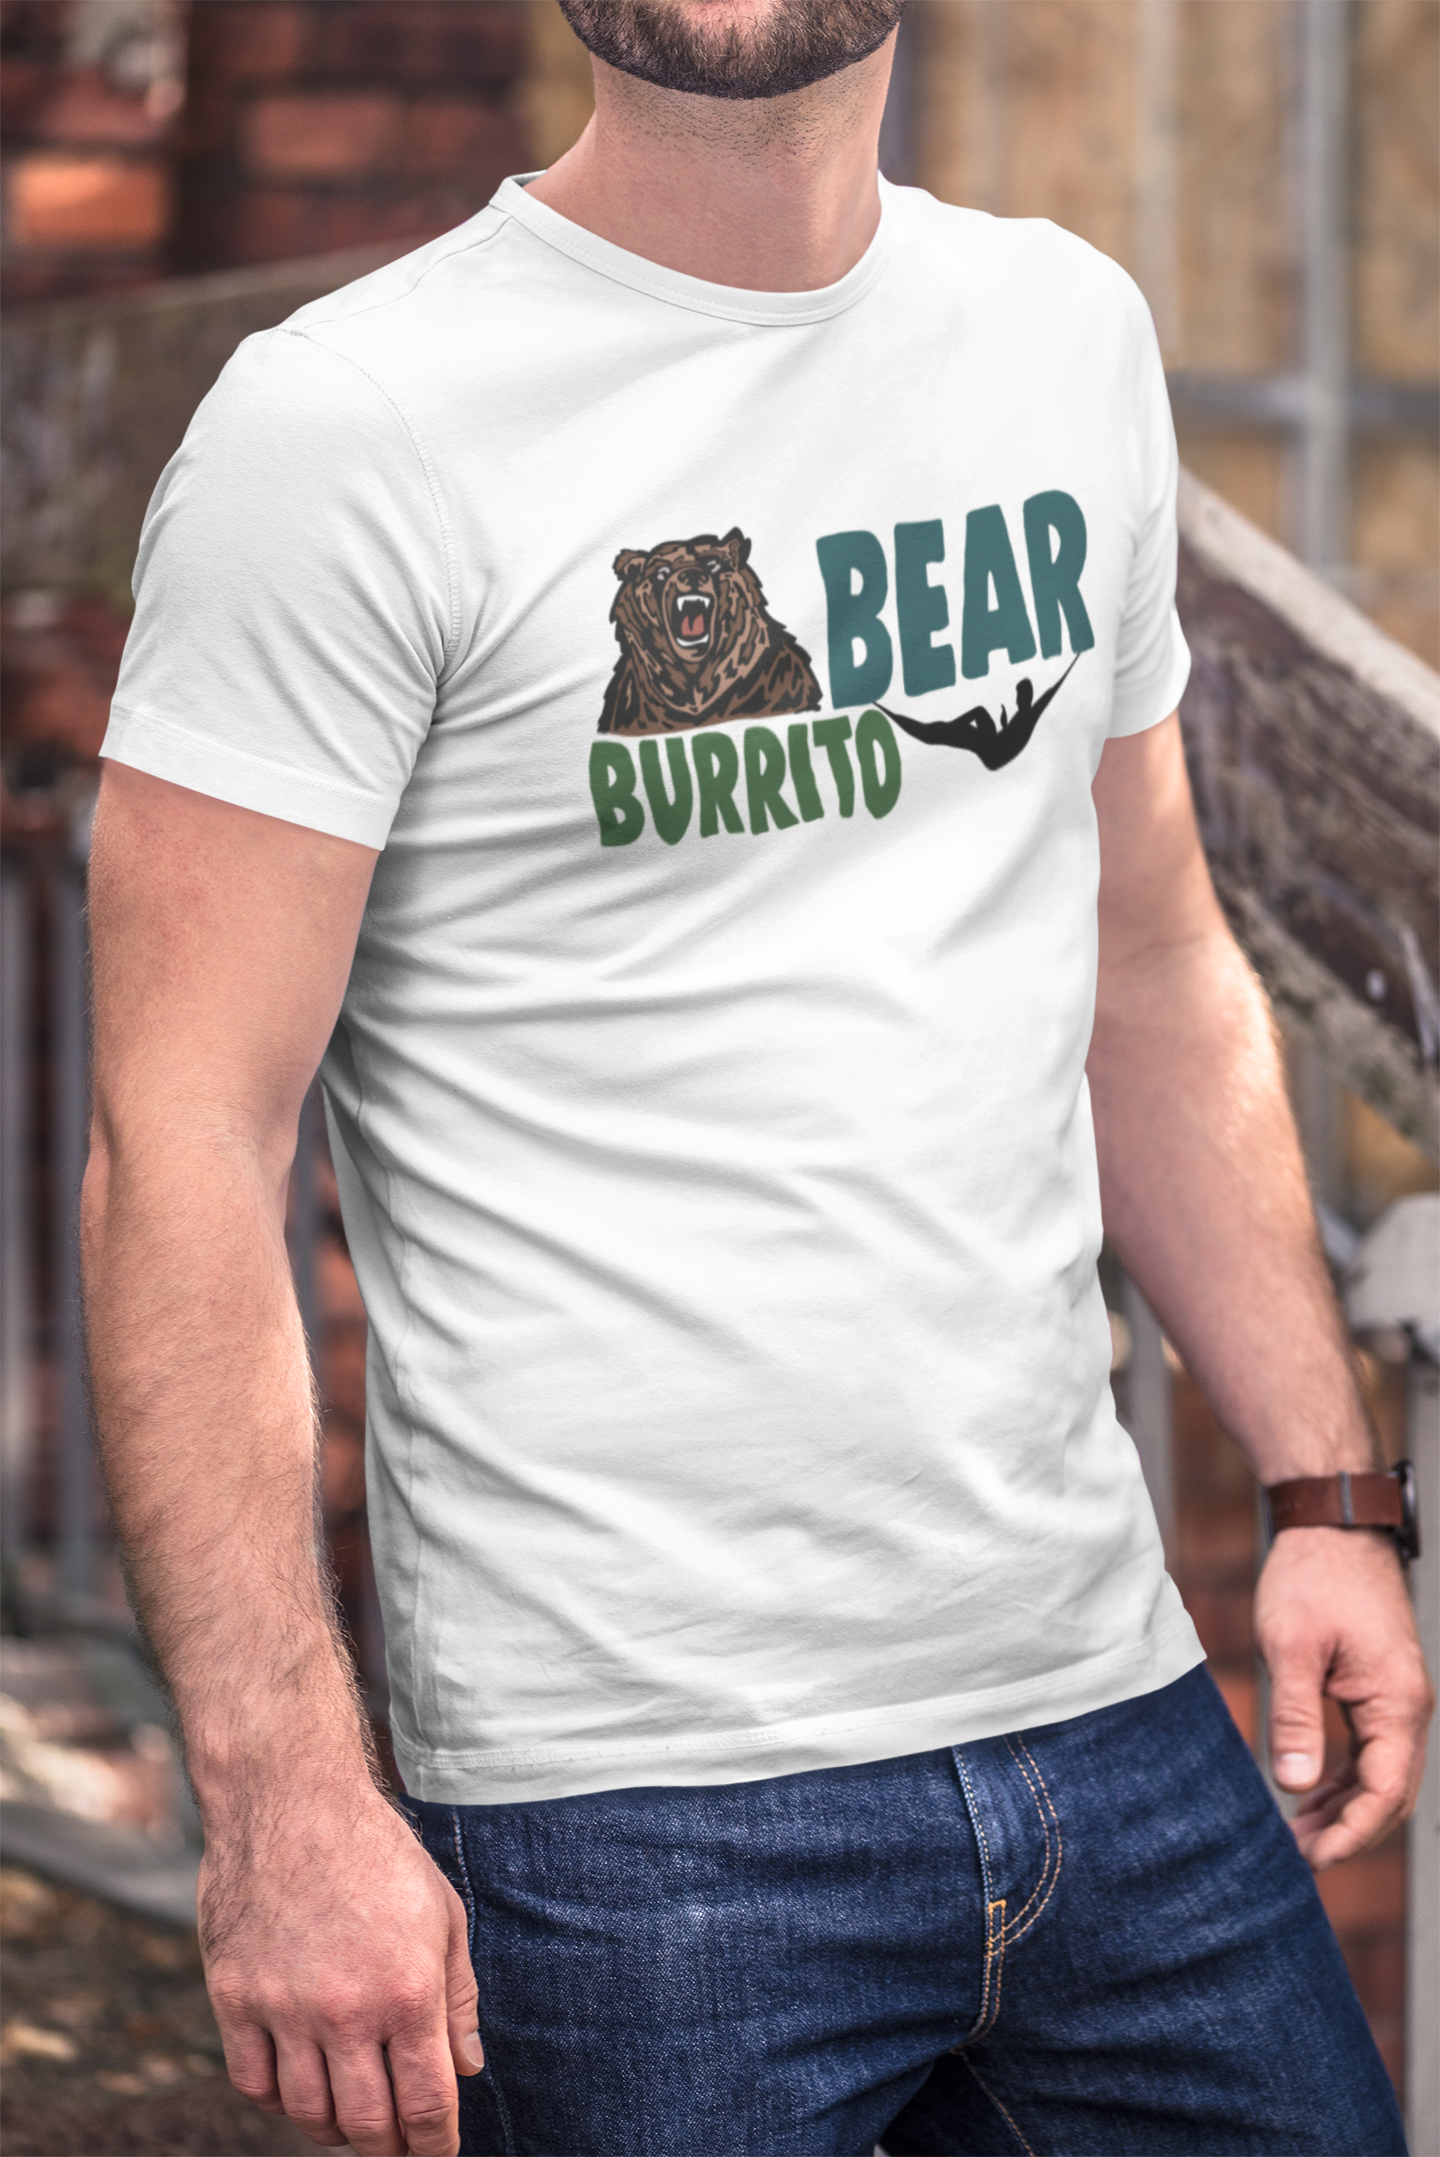 Bear Burrito Hammock Camping Tee Shirt